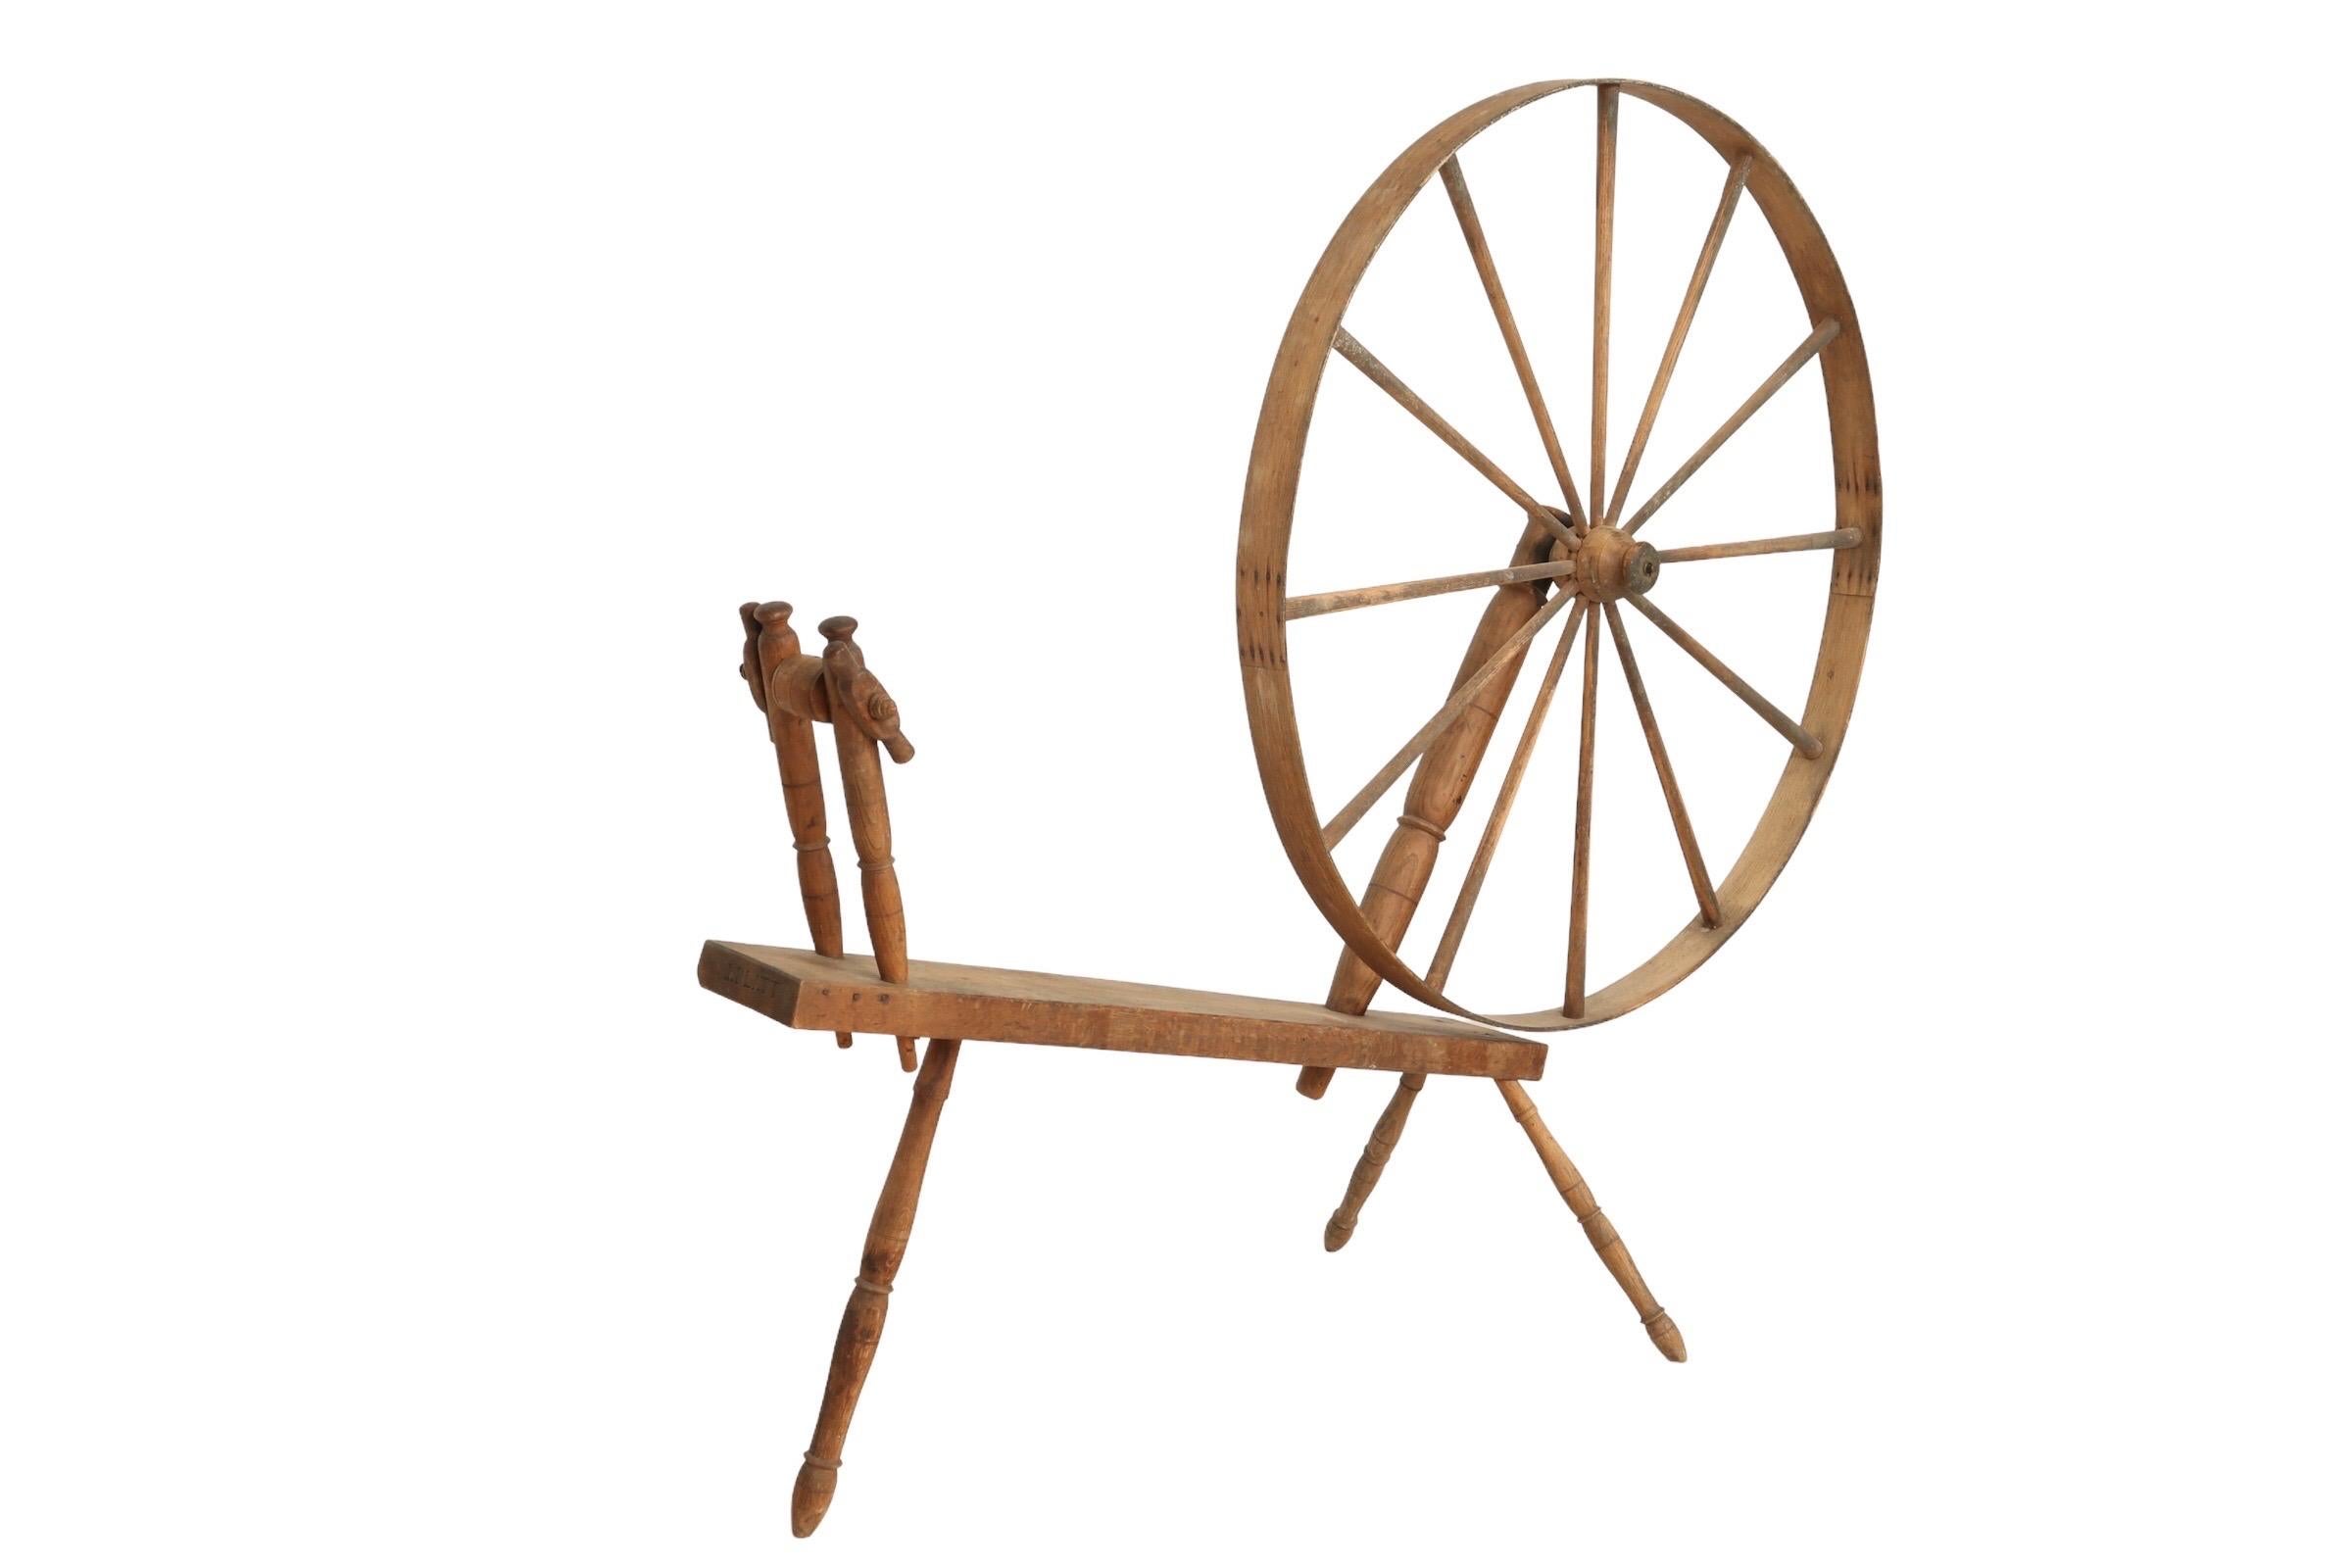 Ein großes, schreitendes Spinnrad, das im Stehen bedient werden kann und auch als Riesenrad bezeichnet wird. Hergestellt von J. Platt, wie auf dem Ende der Eichenbasis oder des Tisches vermerkt, der Räder in den späten 1700er und frühen 1800er